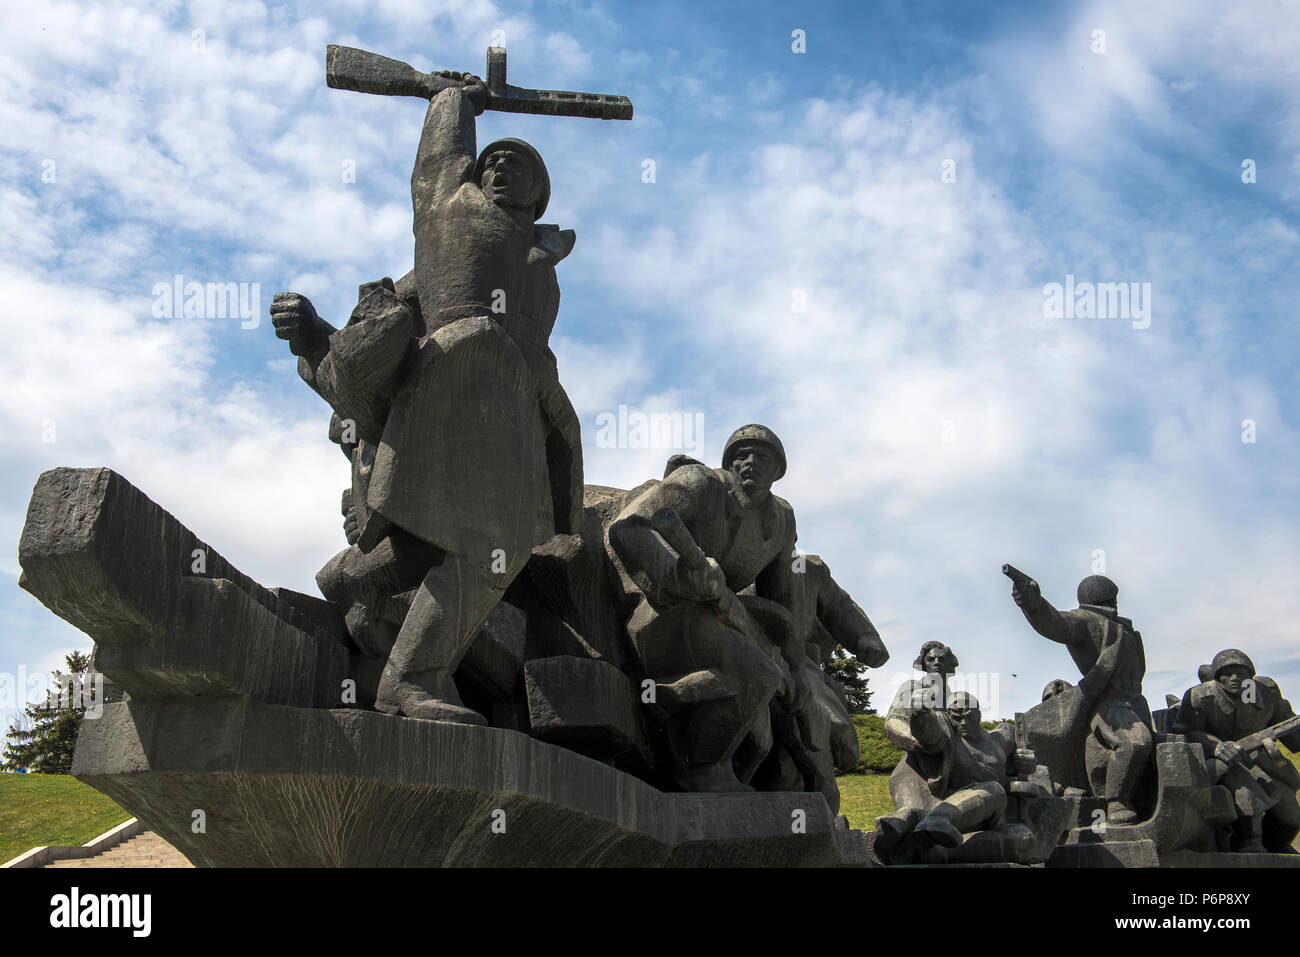 Rodina Mat réaliste 'socialiste' statues, Kiev. L'Ukraine. Banque D'Images